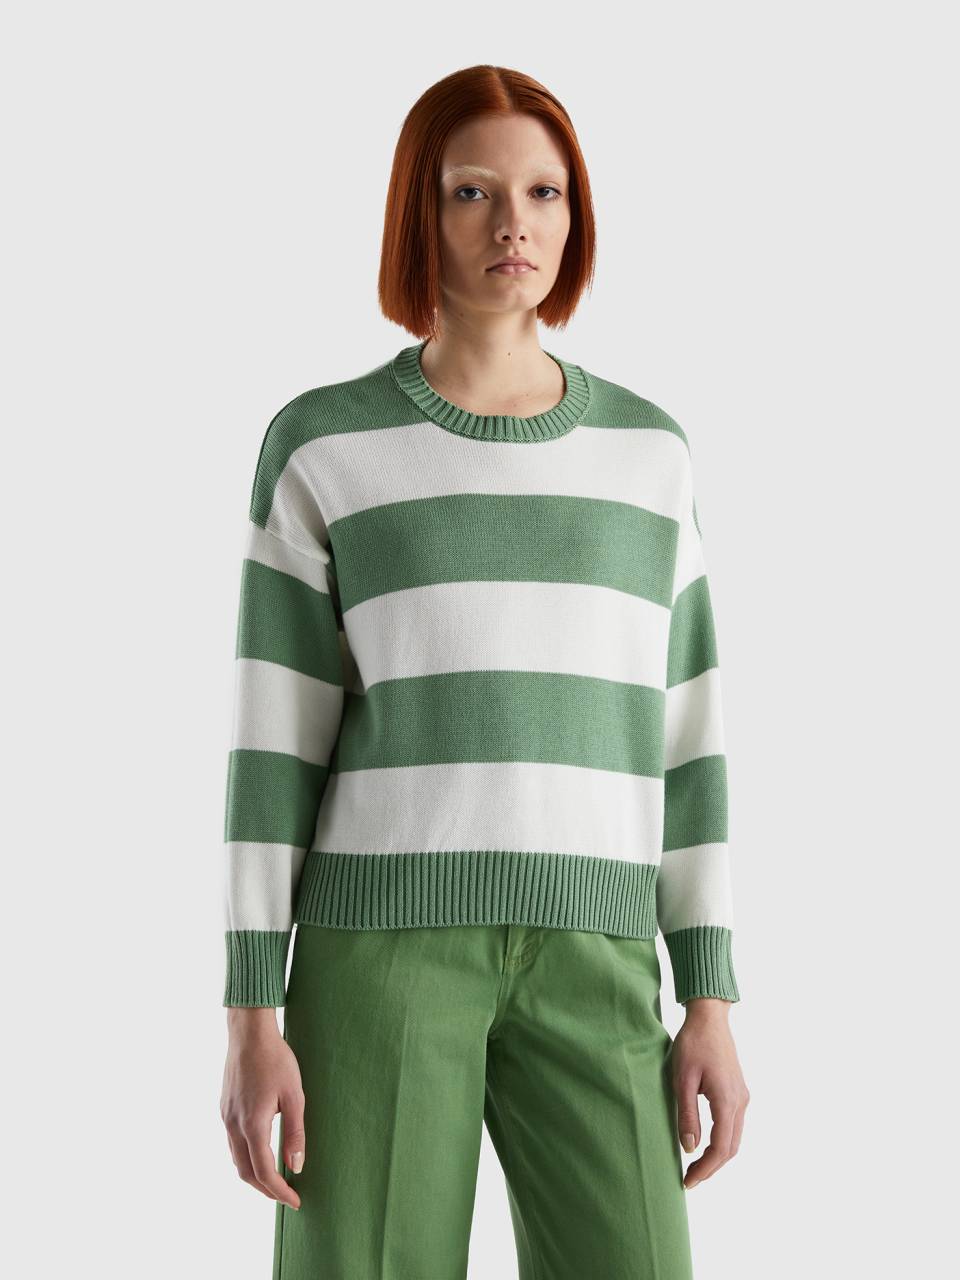 Women's Green Striped Sweaters